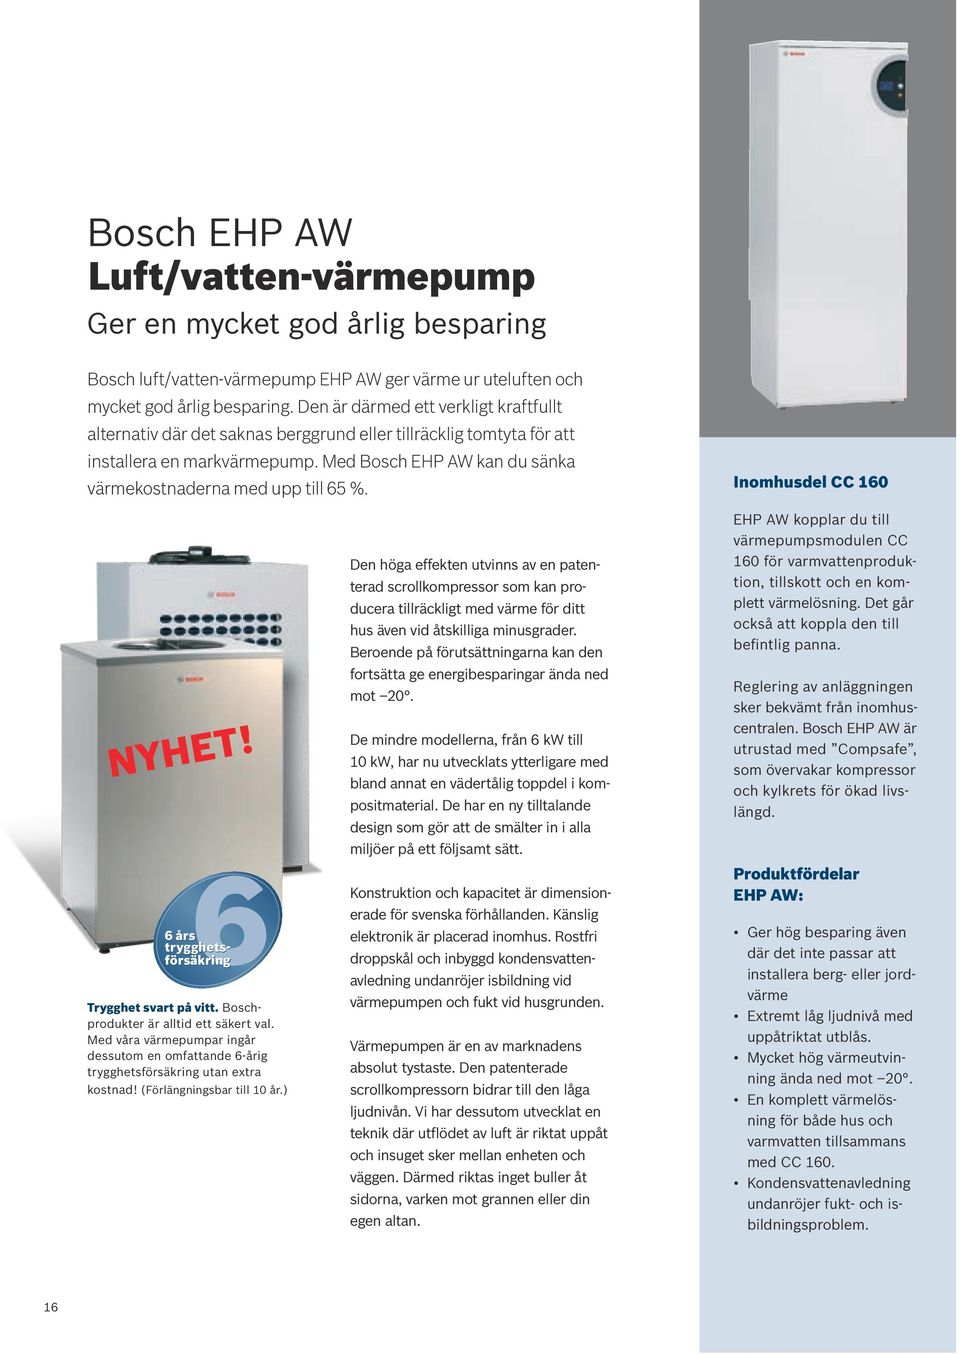 Med Bosch EHP AW kan du sänka värmekostnaderna med upp till 65 %. Inomhusdel CC 160 NYHET! 6 trygghetsförsäkring Trygghet svart på vitt. Boschprodukter är alltid ett säkert val.